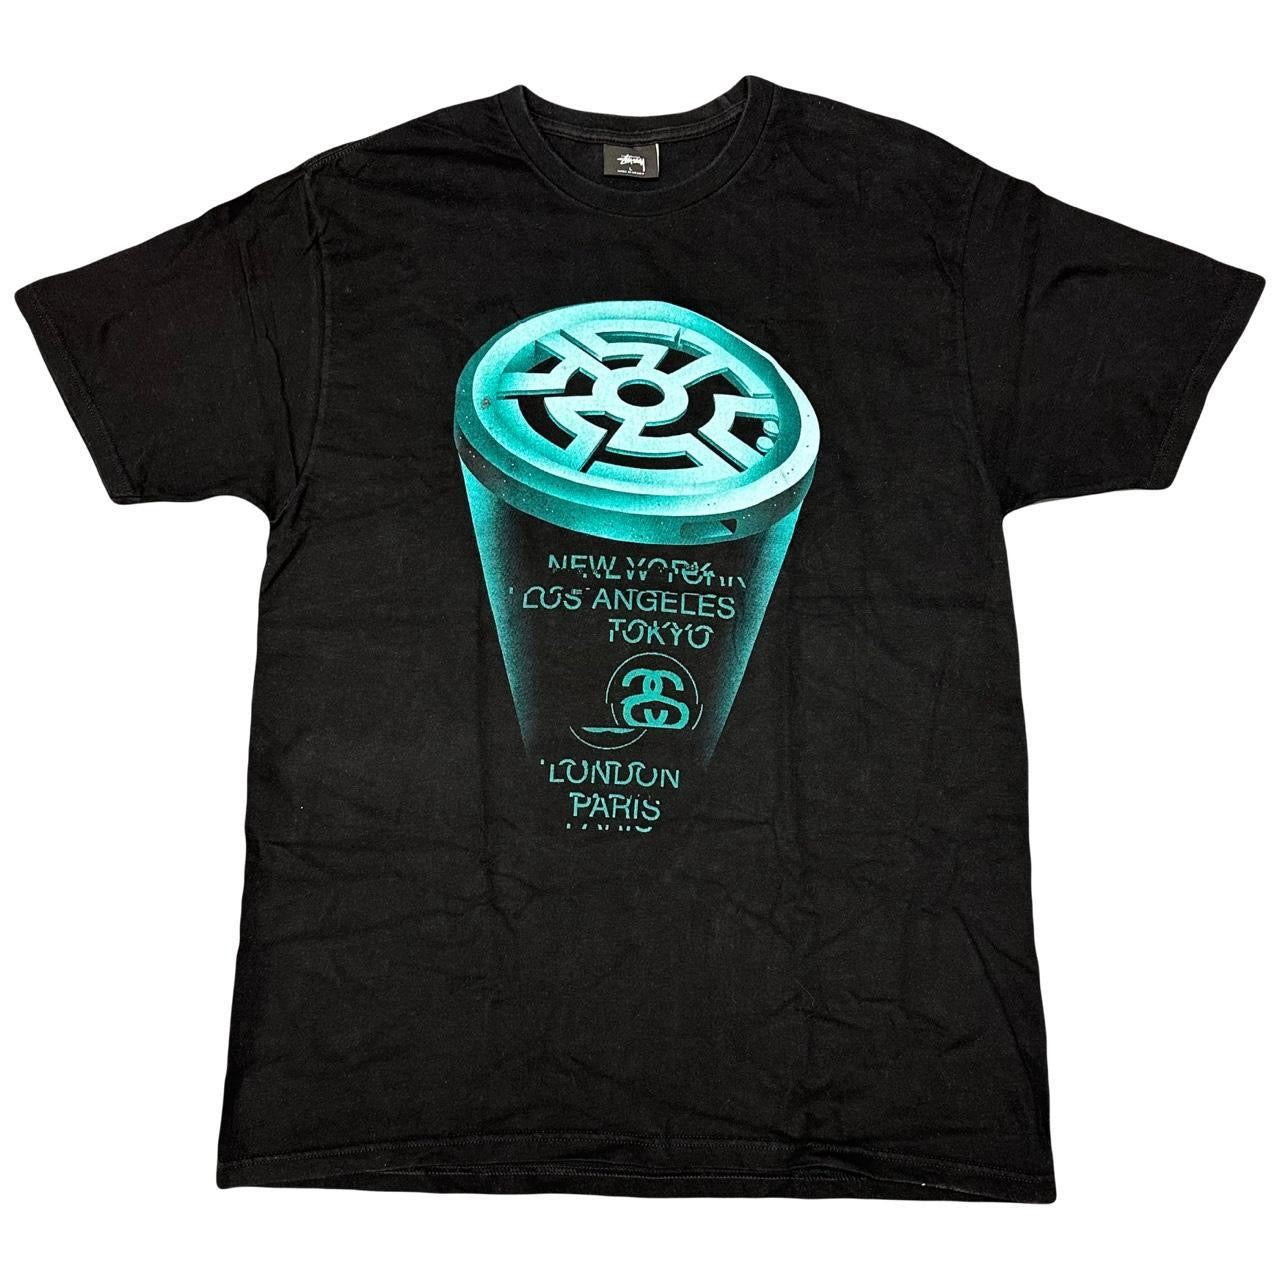 Stüssy Hologram T-Shirt In Black & Blue ( L )